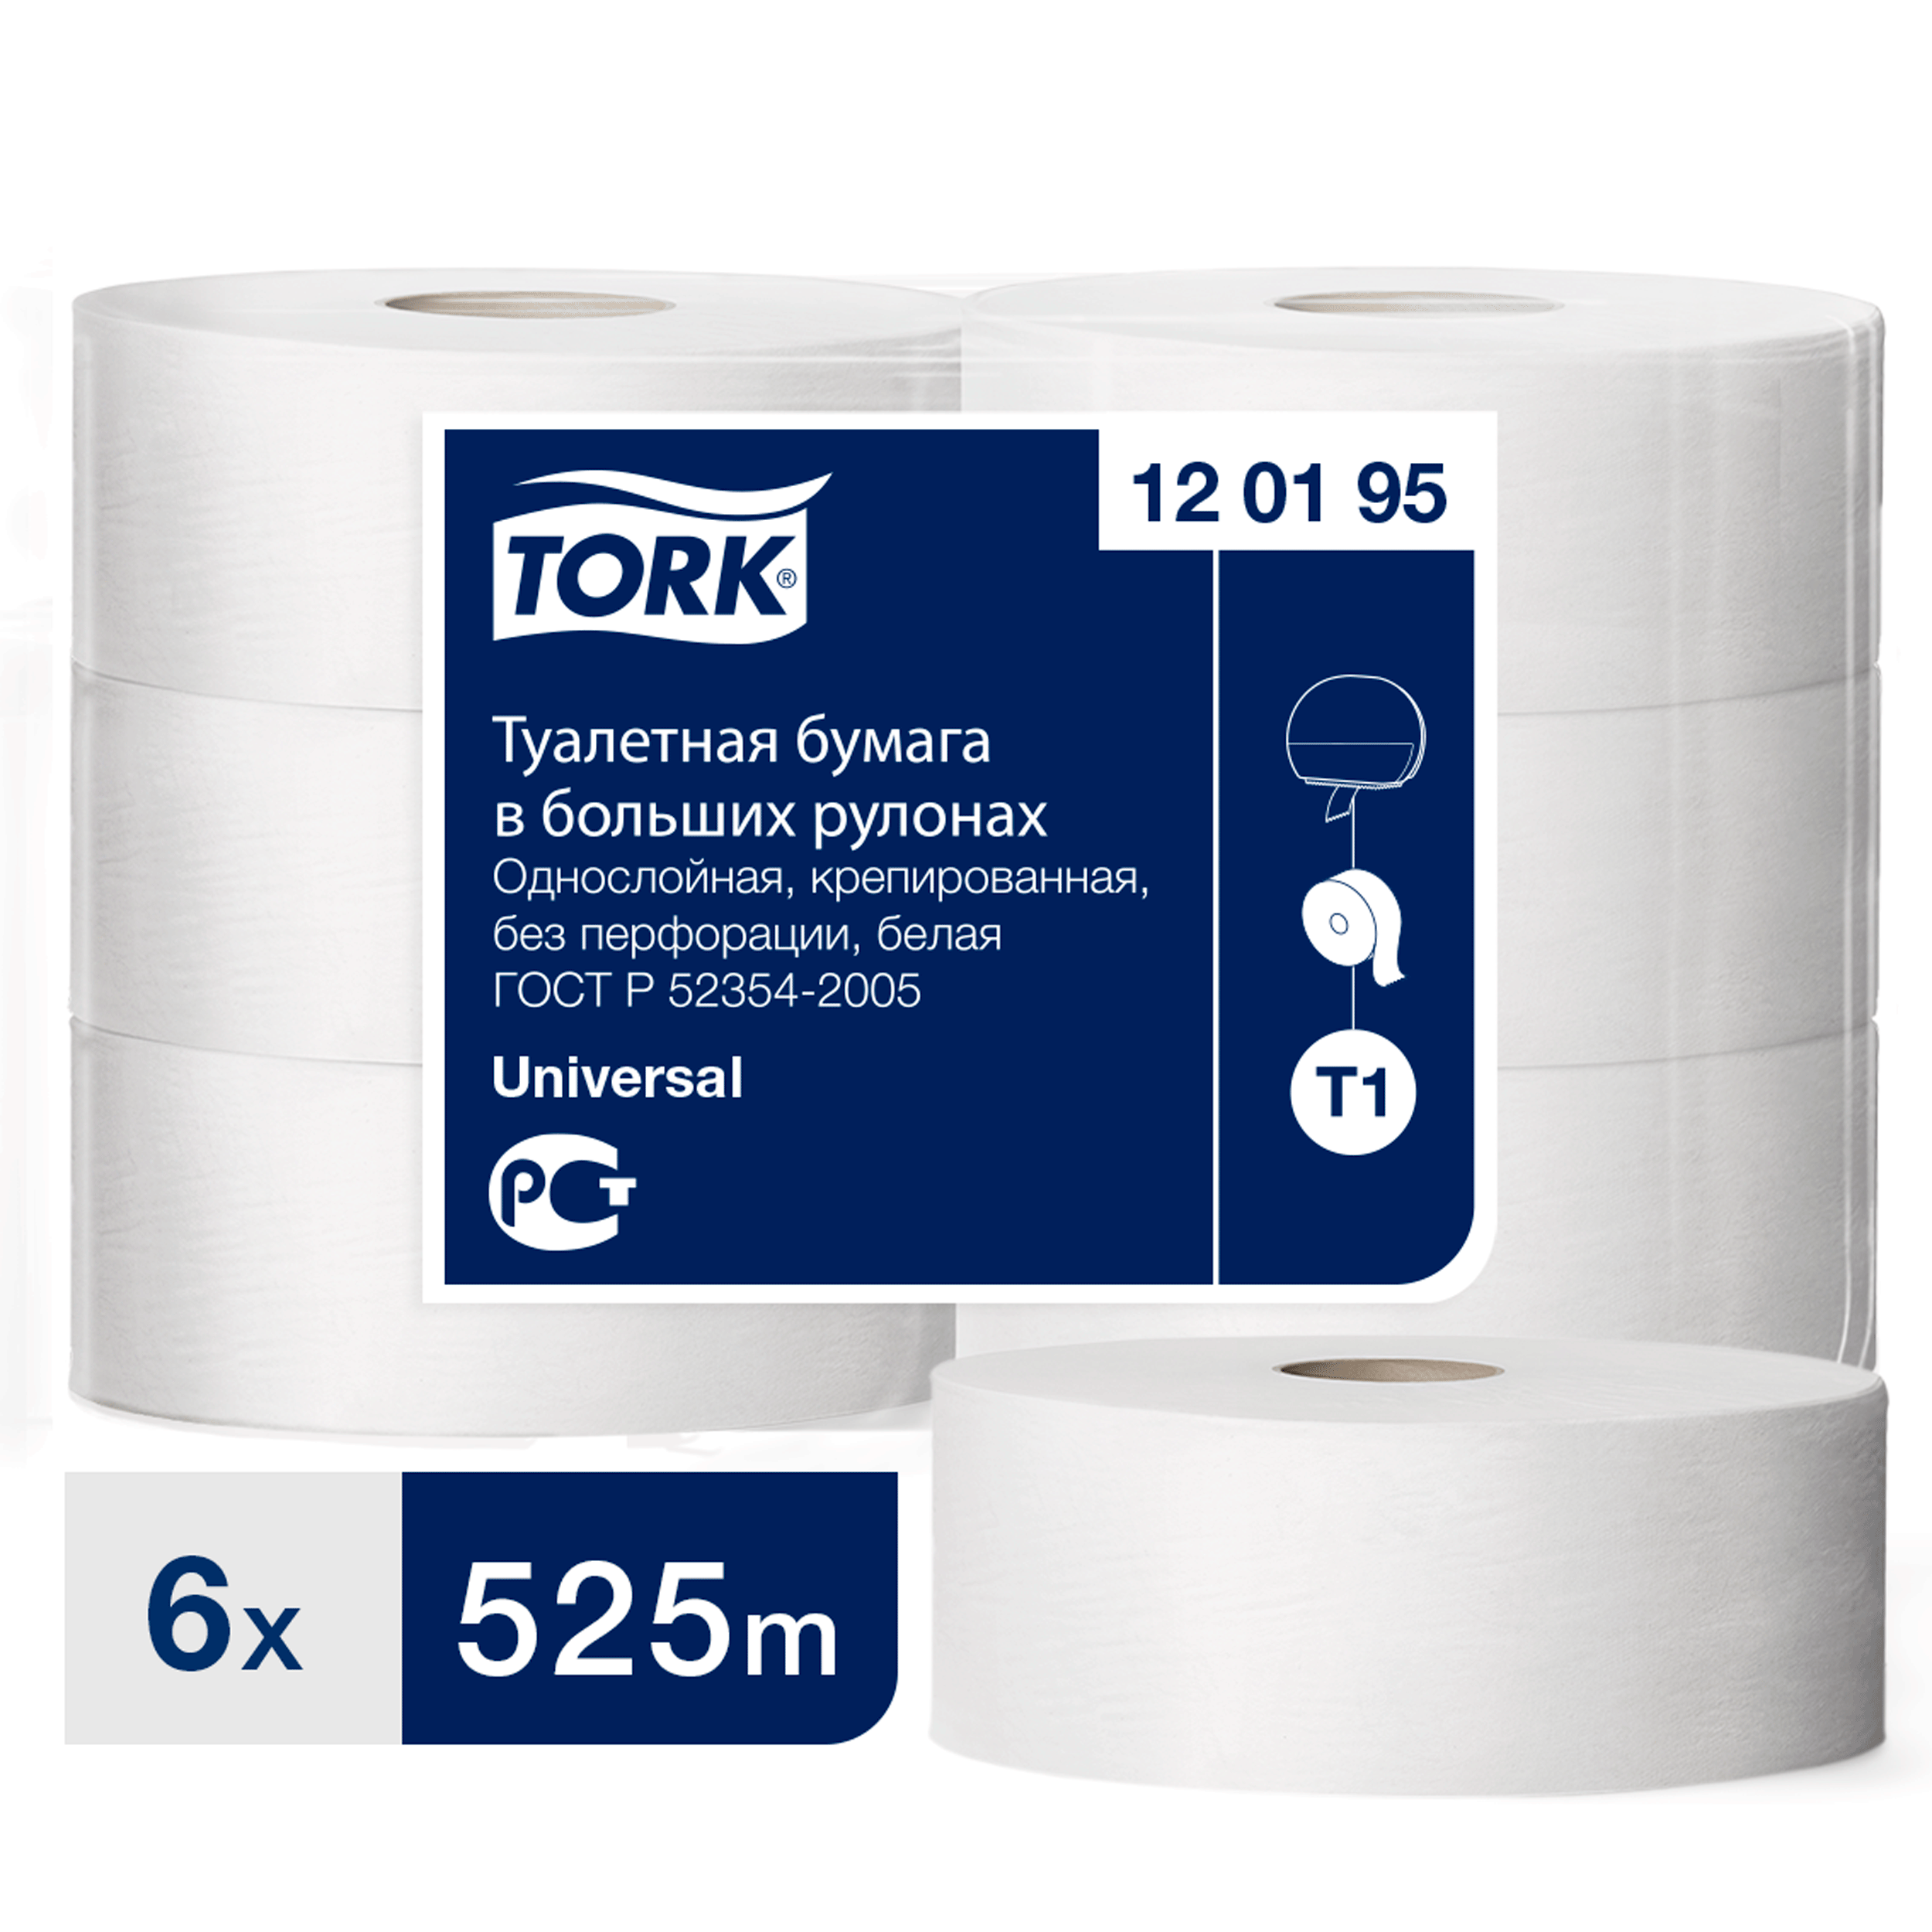 Туалетная бумага Tork в больших рулонах, T1, 1 слой, 525 м, ширина 9,5см, 6 шт туалетная бумага снежок 1 слой 73 м белая